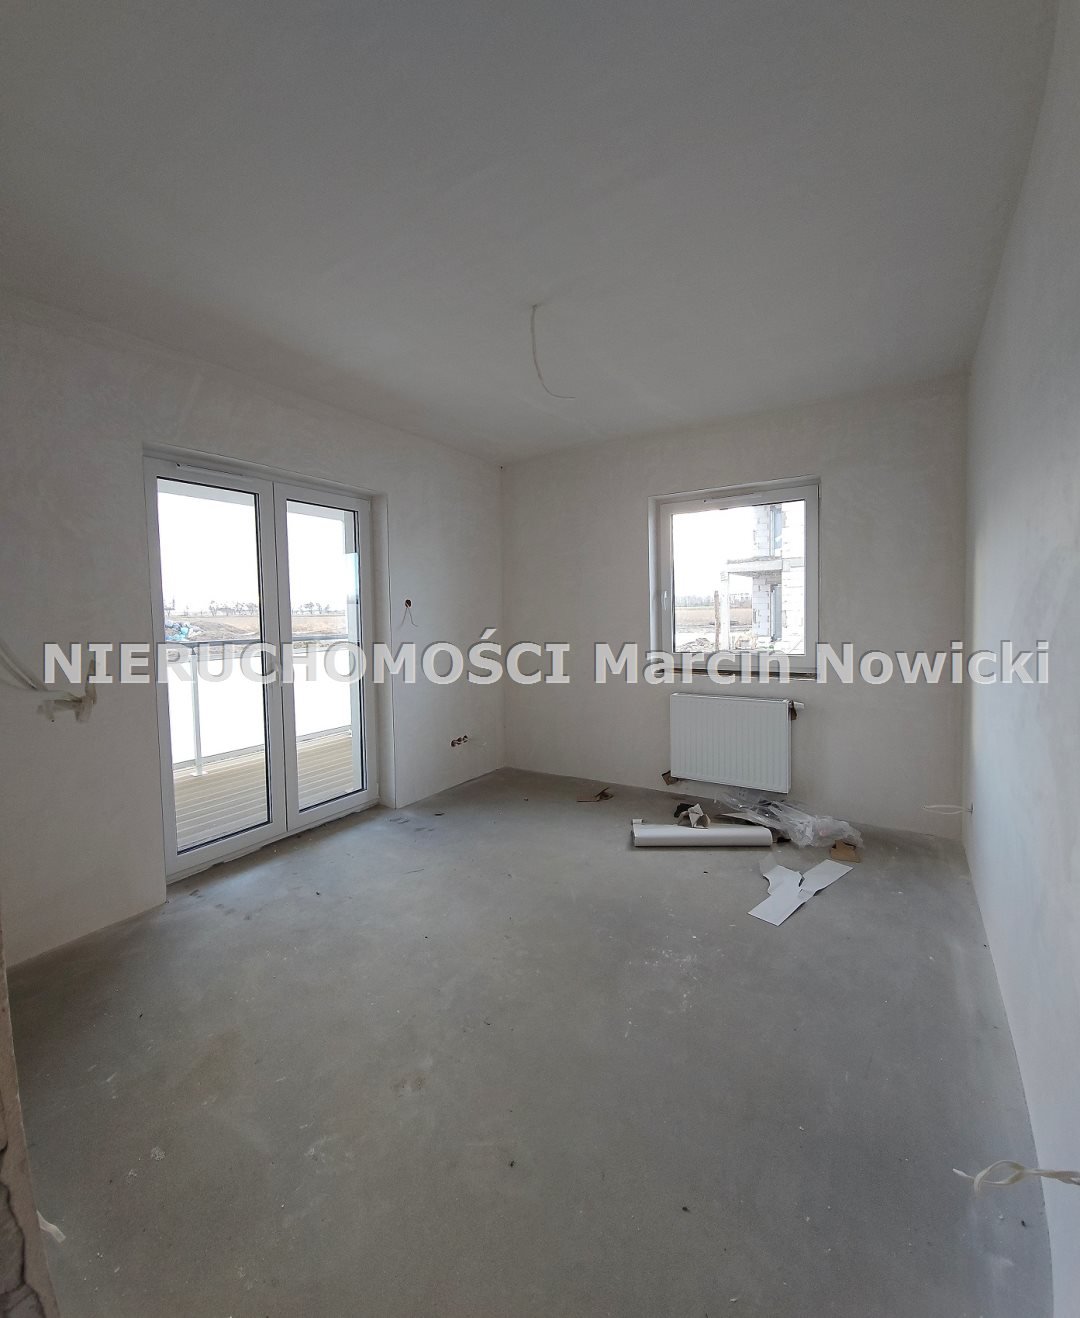 Mieszkanie dwupokojowe na sprzedaż Kutno, Sendlerowej  51m2 Foto 3